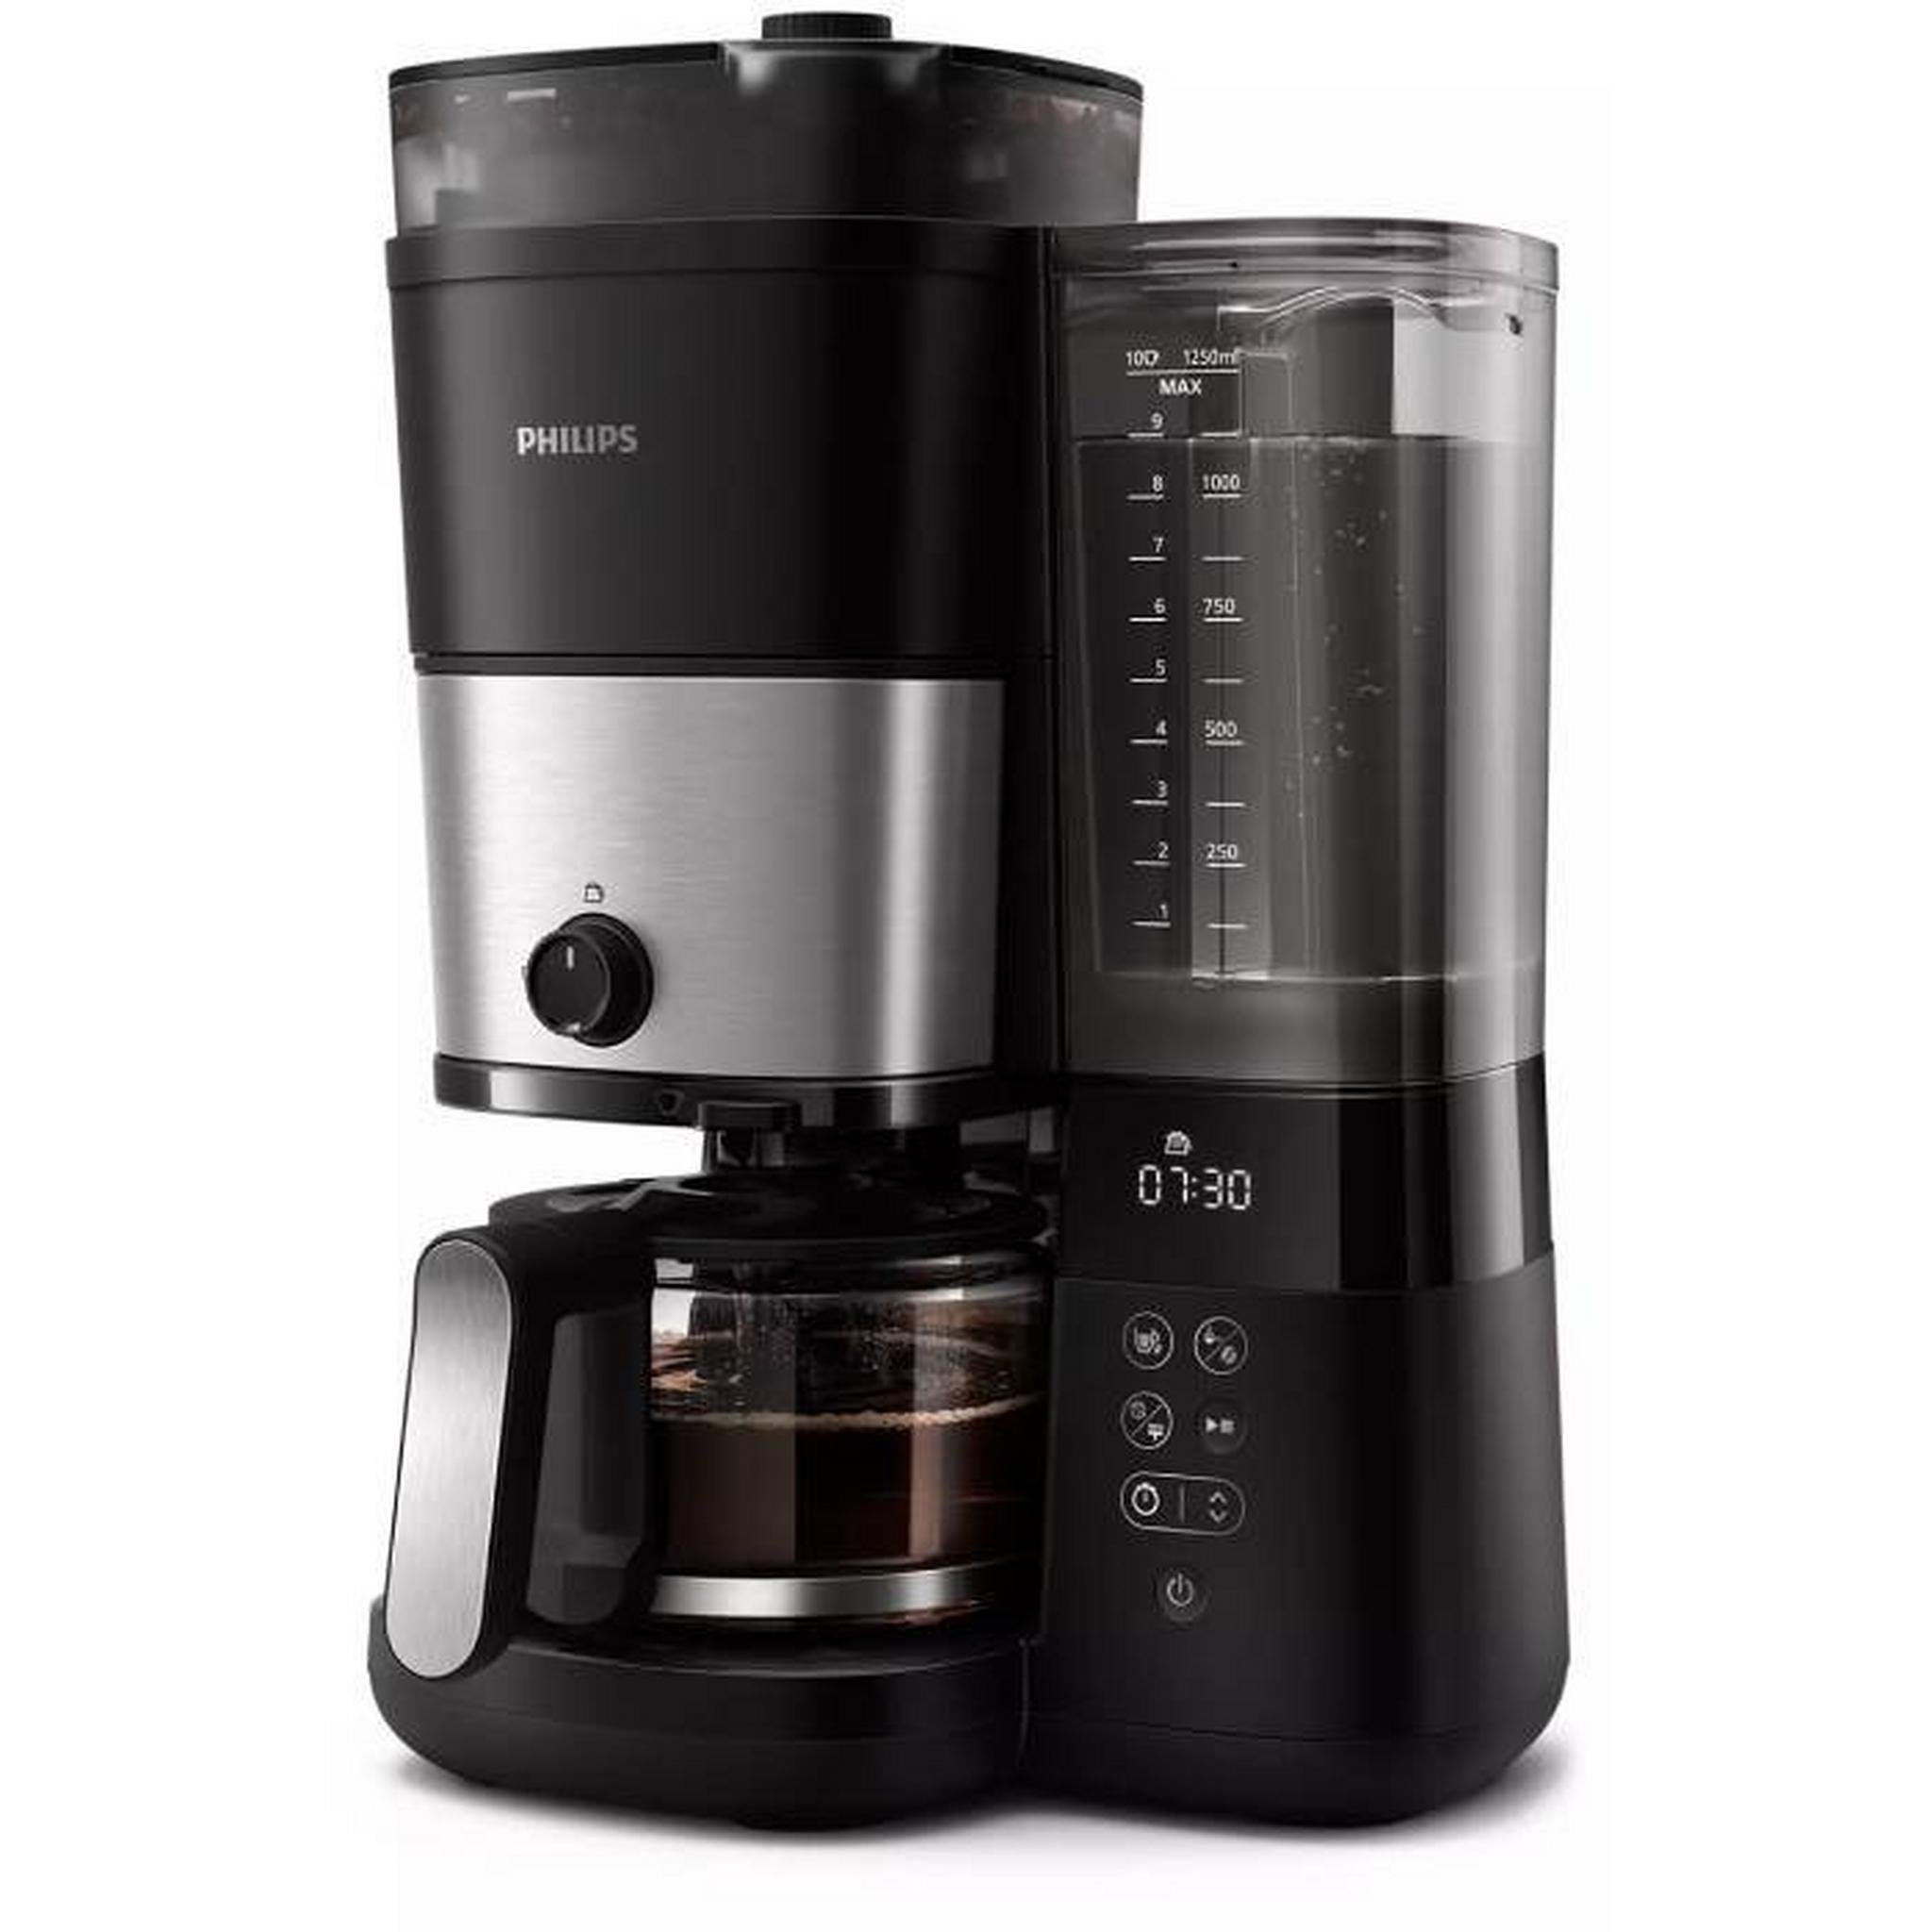 ماكينة تحضير القهوة الكل في 1 من فيليبس، 1.25 لتر، HD7900/50 – أسود